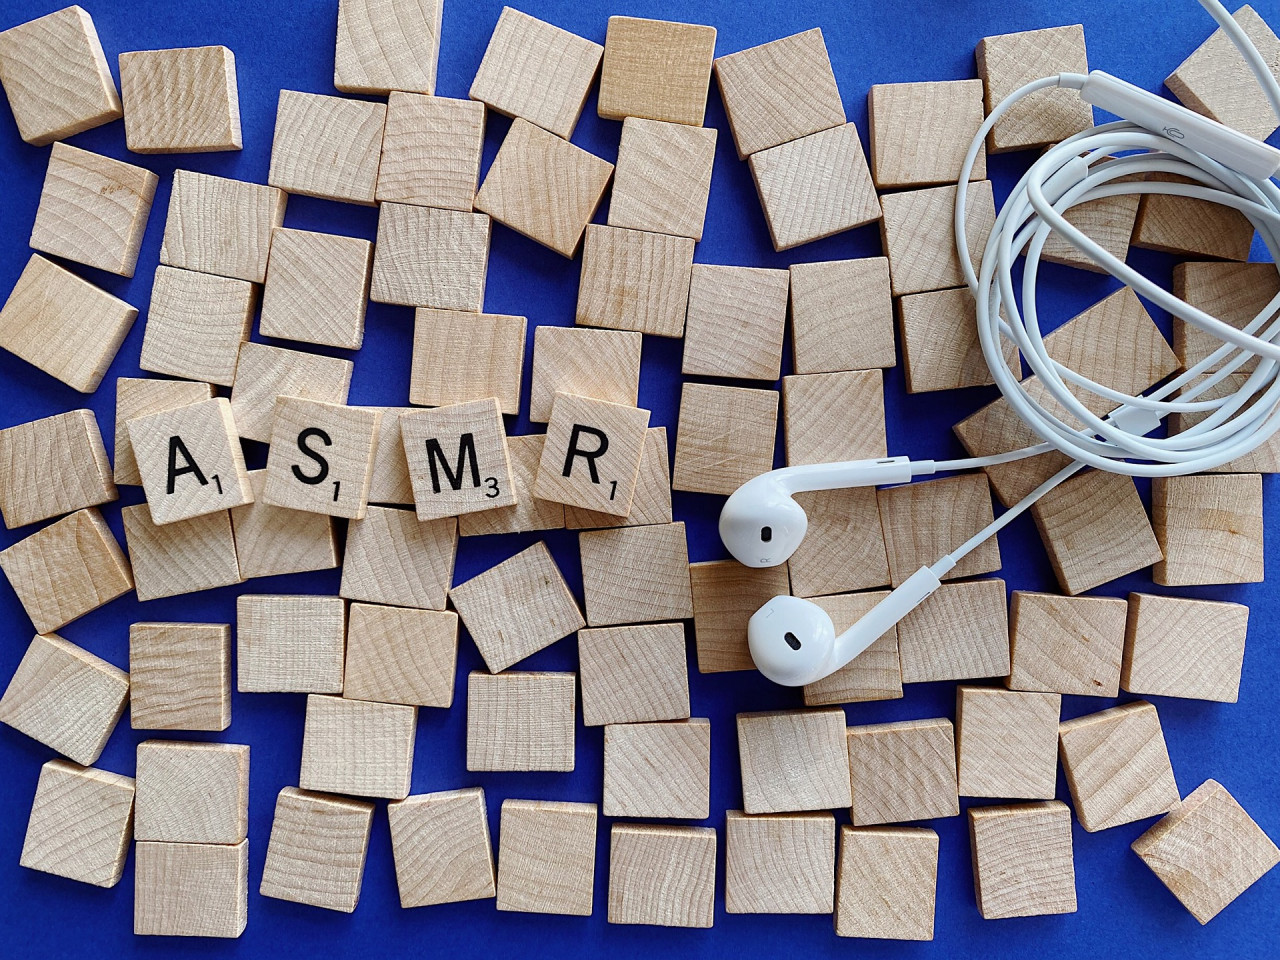 ¿Qué es el ASMR?